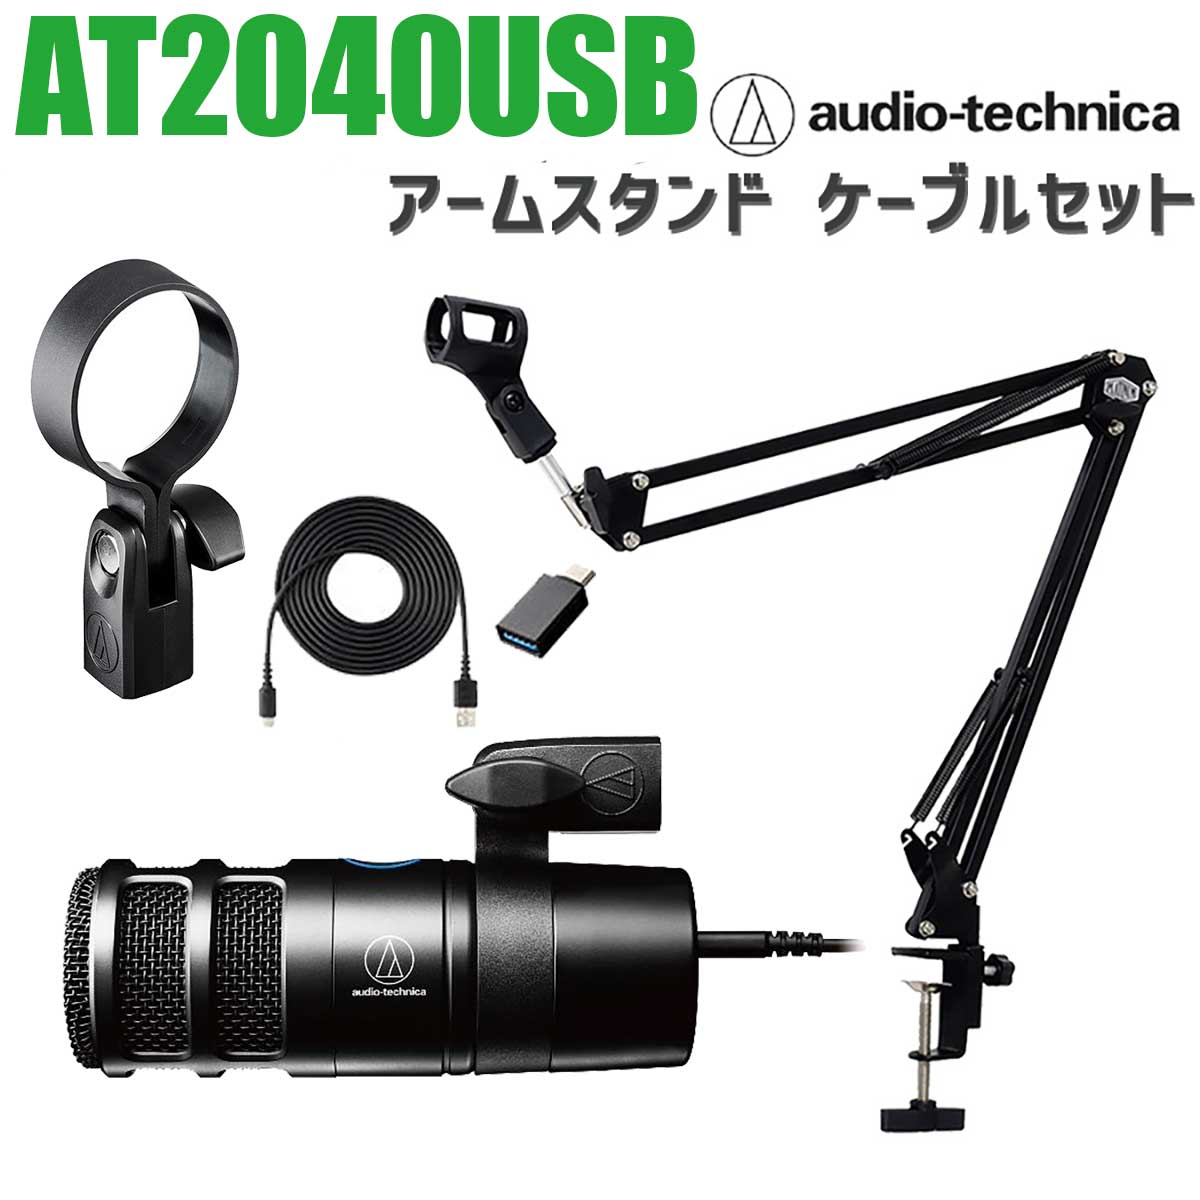 audio-technica AT2040USB アームスタンドセット ハイパーカーディオイド ダイナミック USBマイク オーディオテクニカ